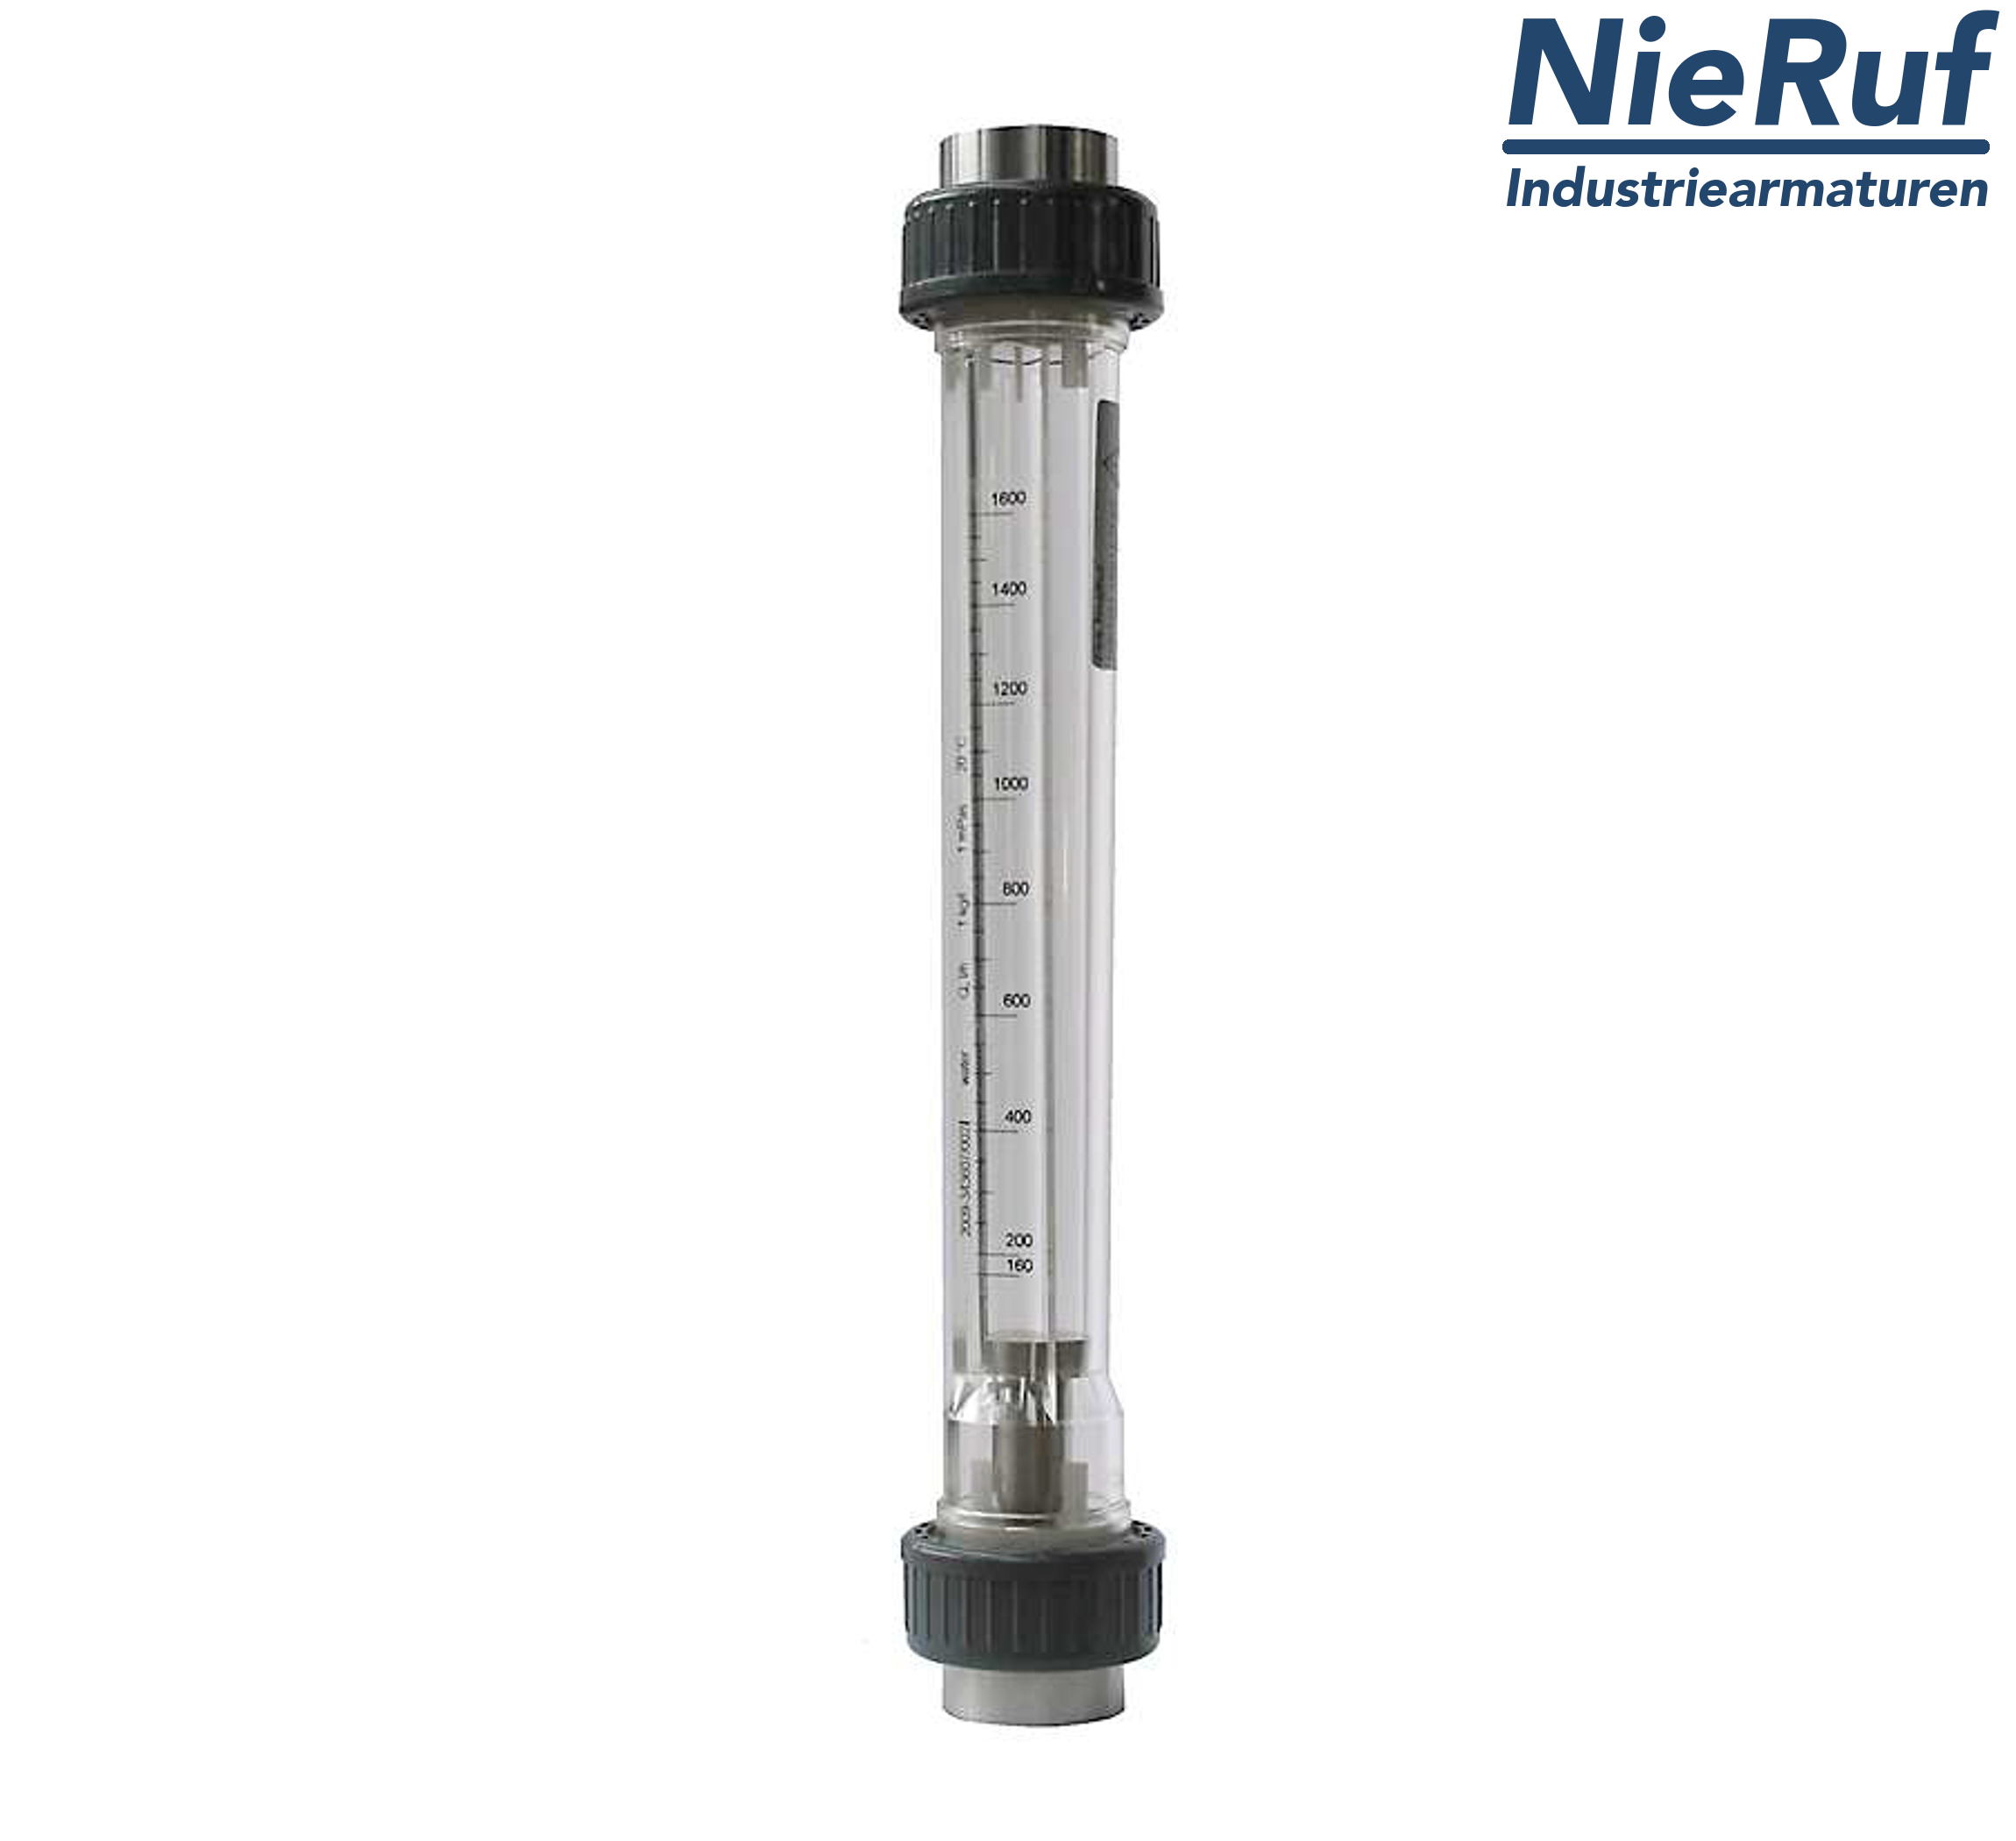 Variable area flowmeter 1 1/4" Inch NPT 70000.0 - 280000 l/h air NBR